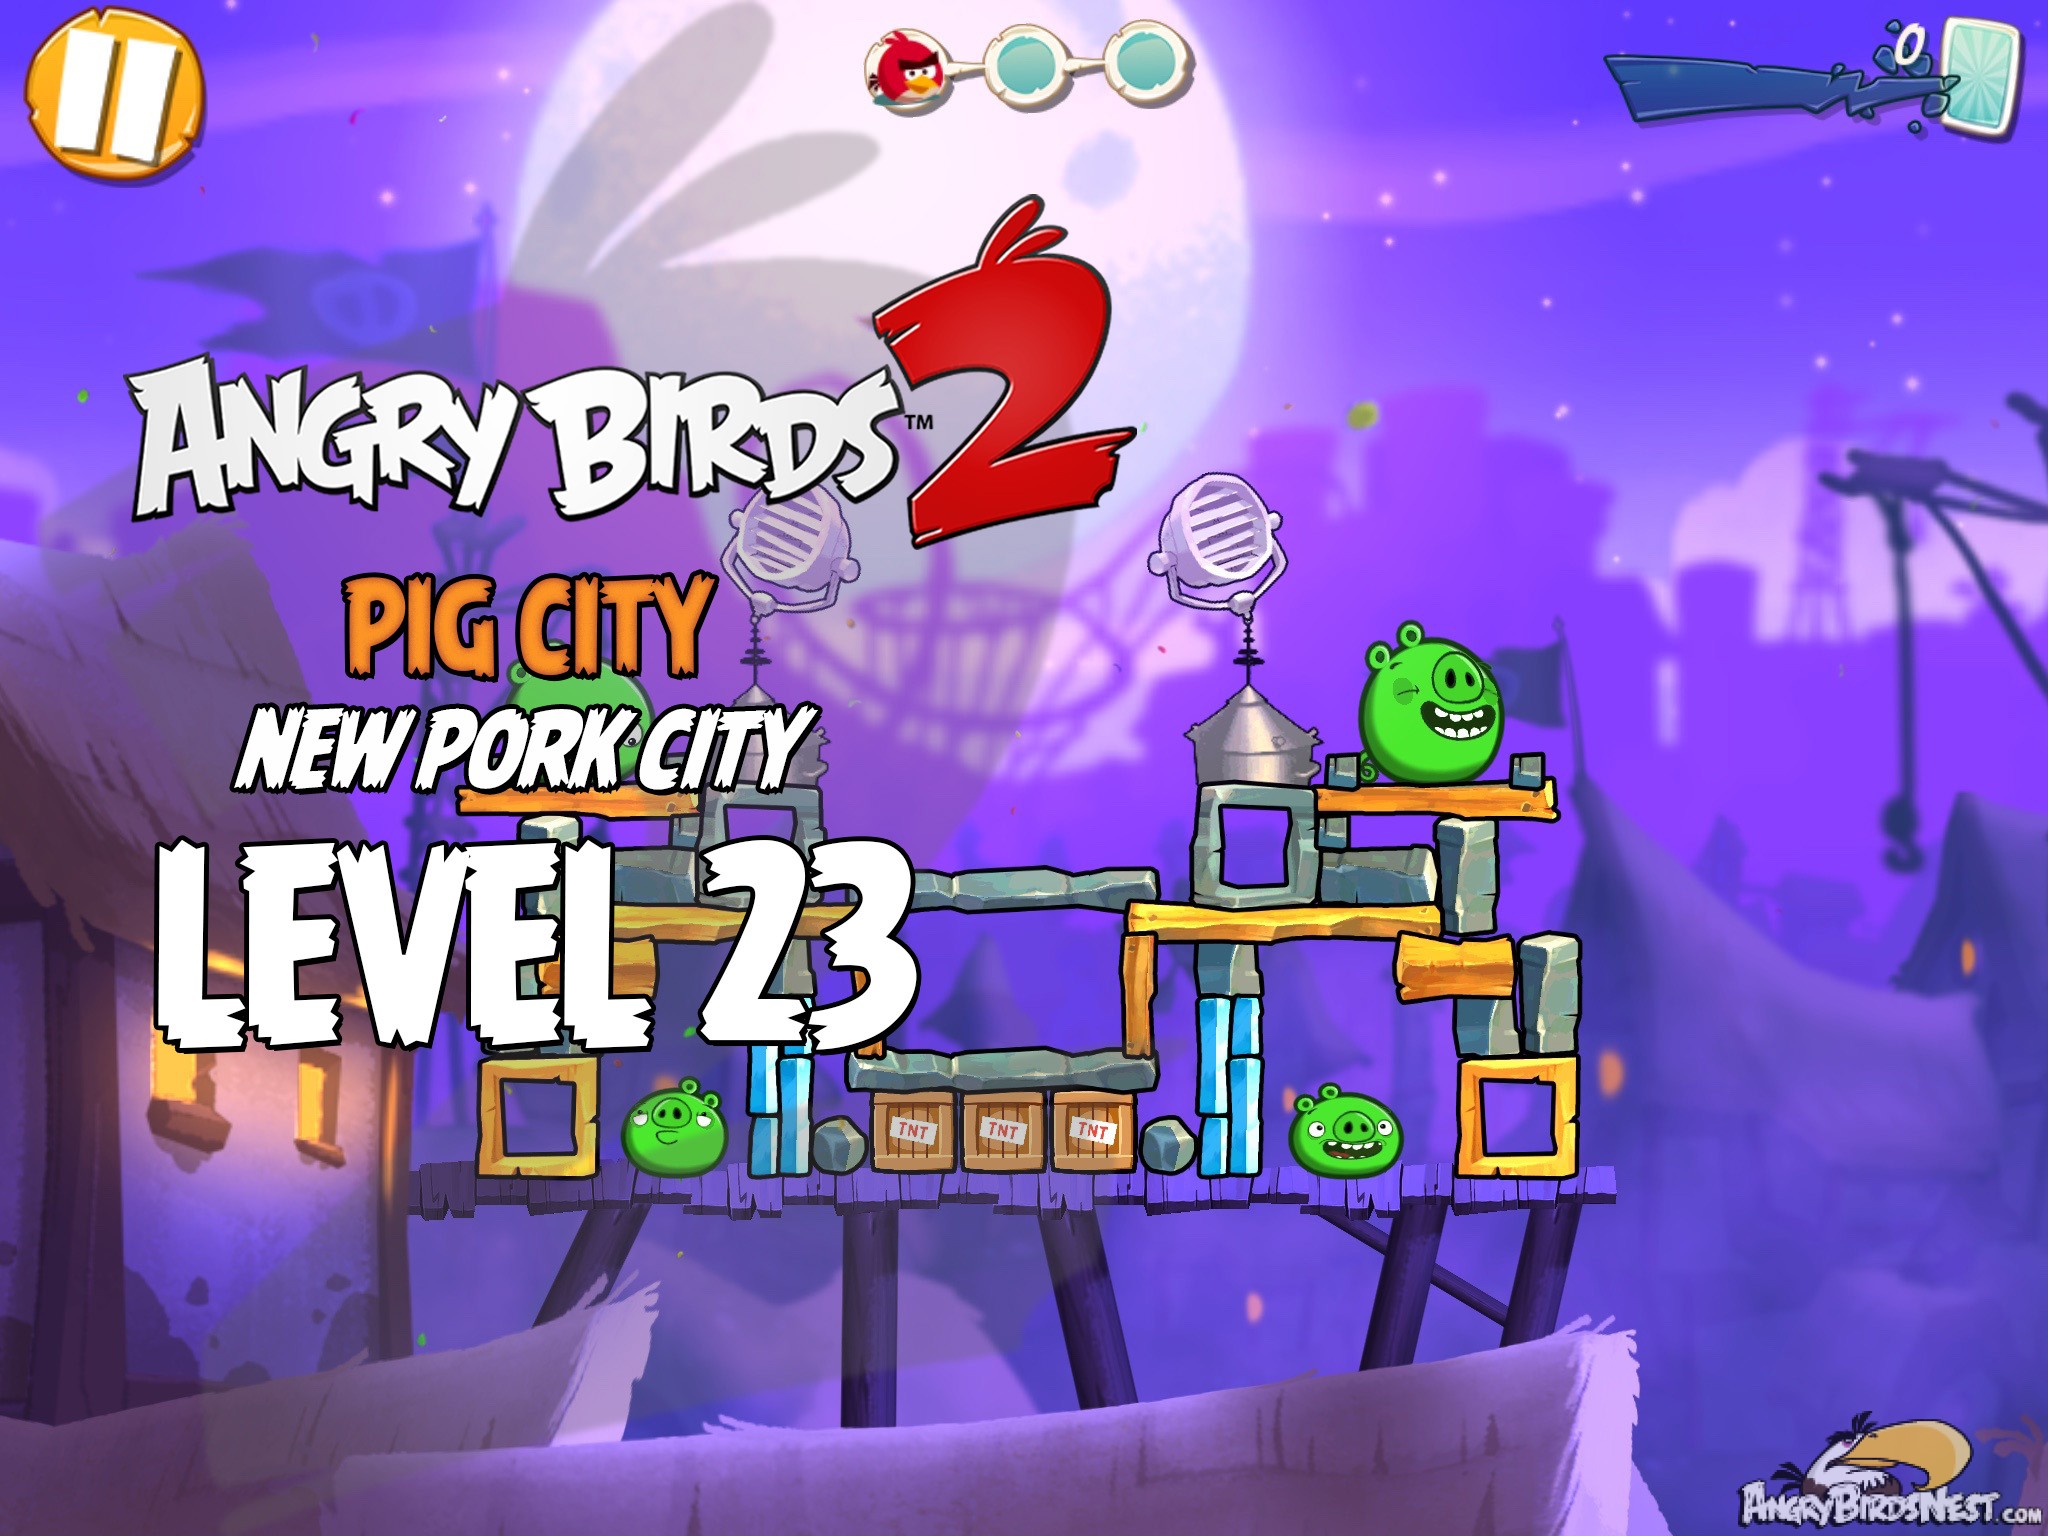 Angry Birds 2 Pig City New Pork City Level 23